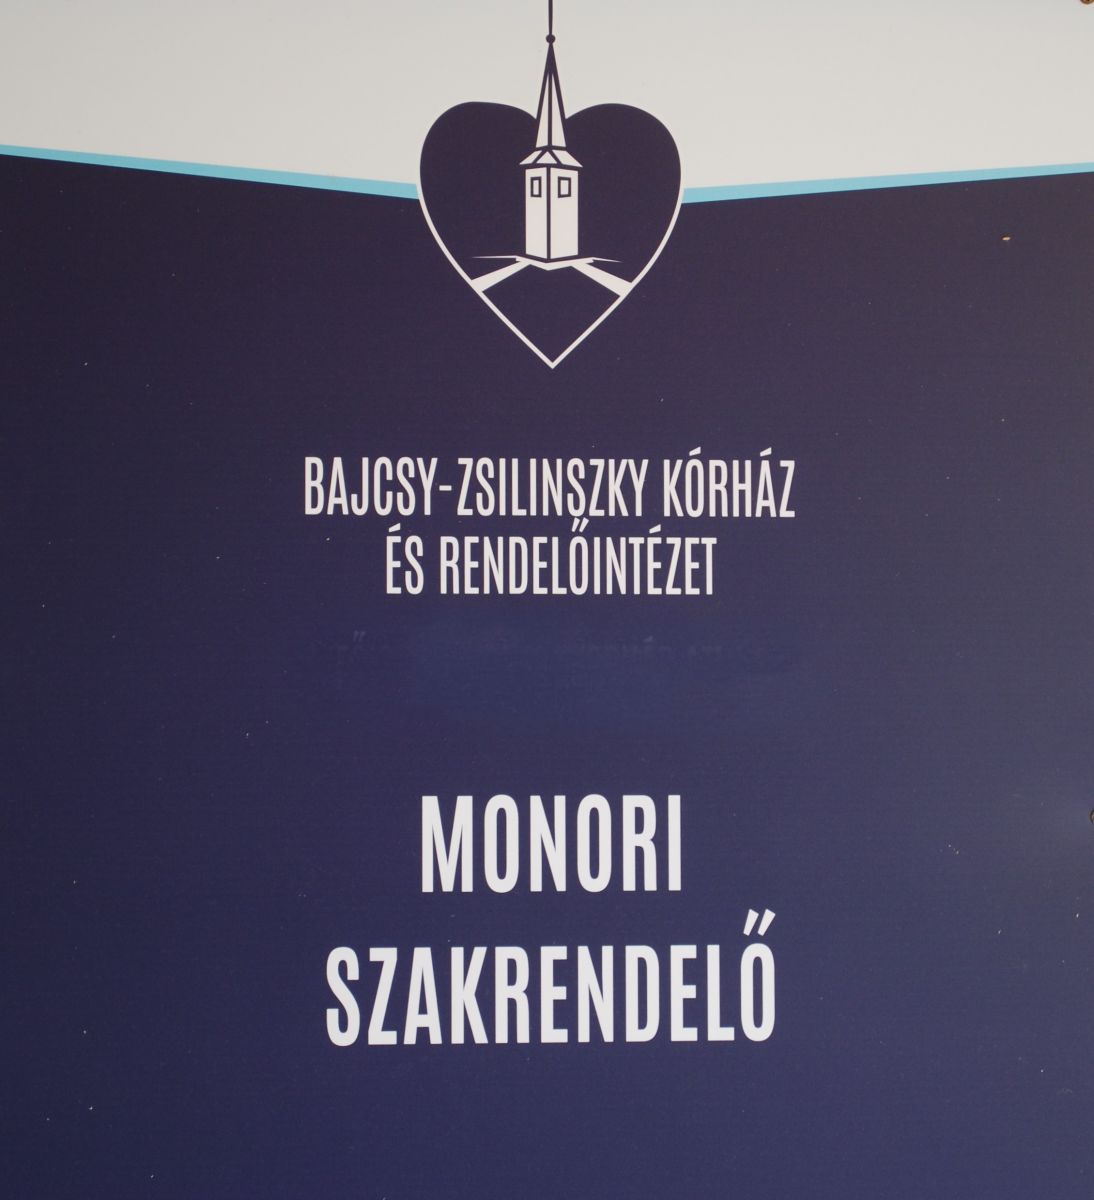 A Budapesti Bajcsy-Zsilinszky Kórház és Rendelőintézet Monori Rendelőintézet tájékoztatása